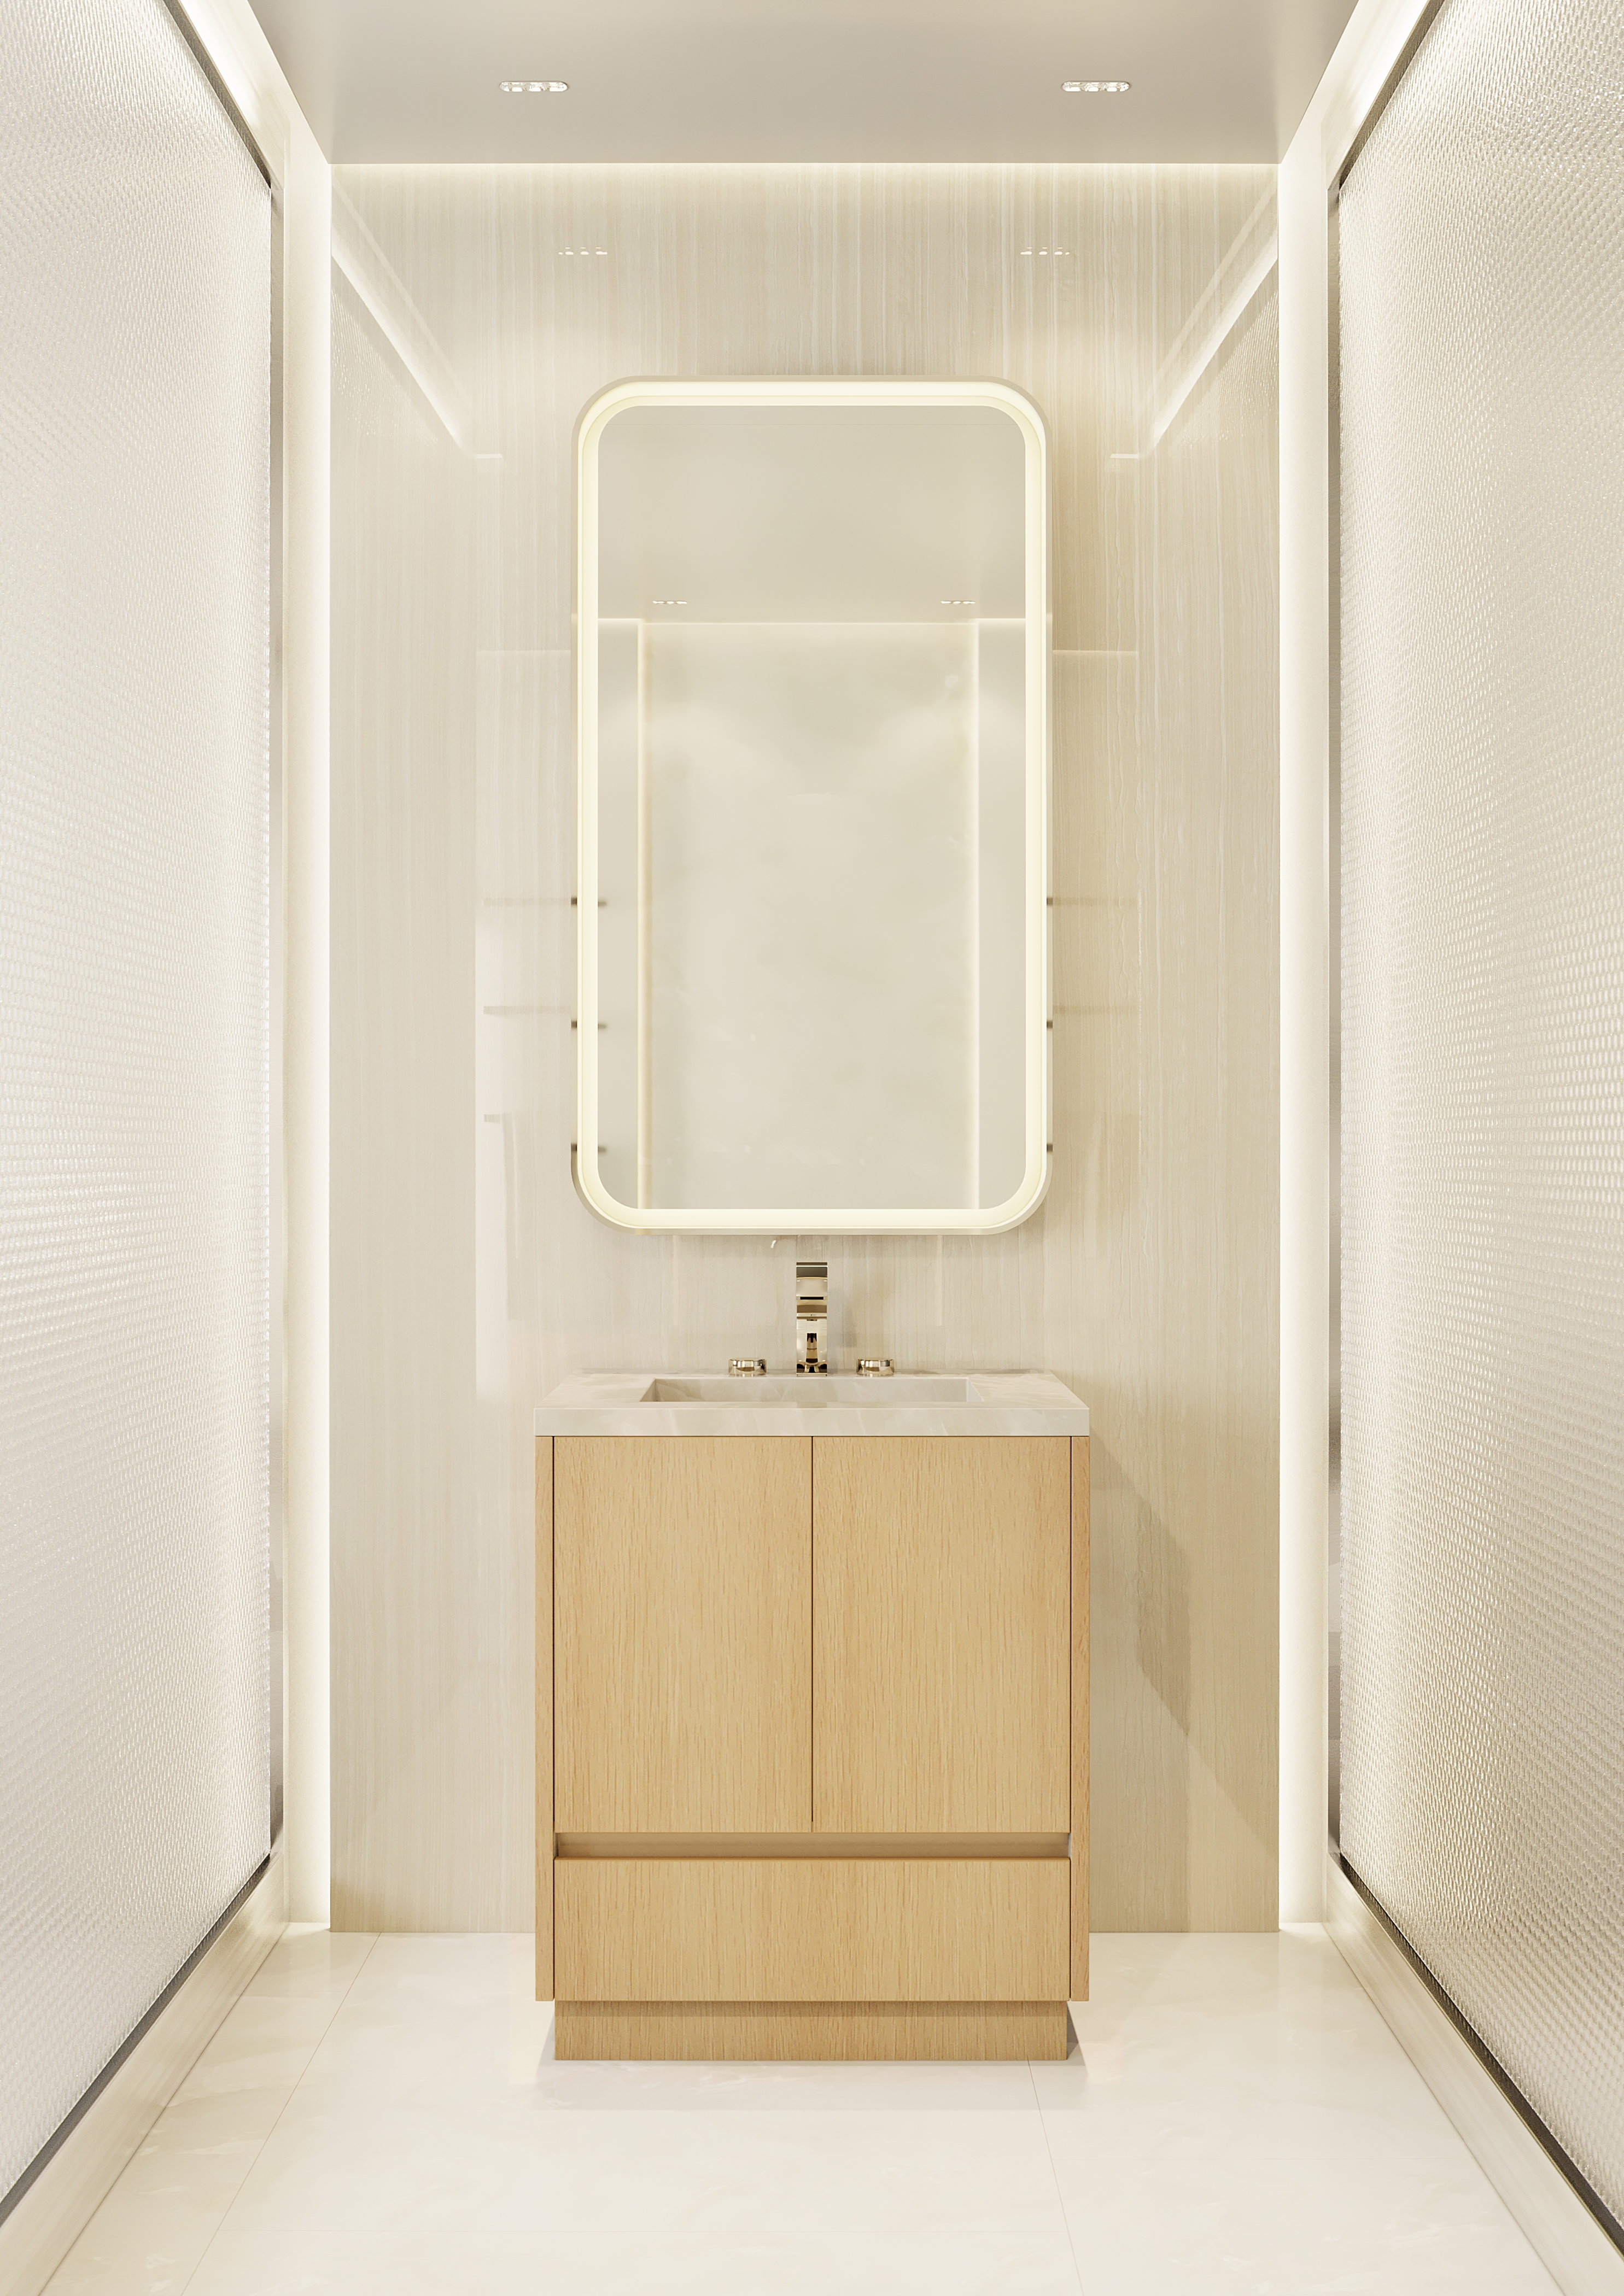 Nia Bathroom Vanity #05 – $12,450.00